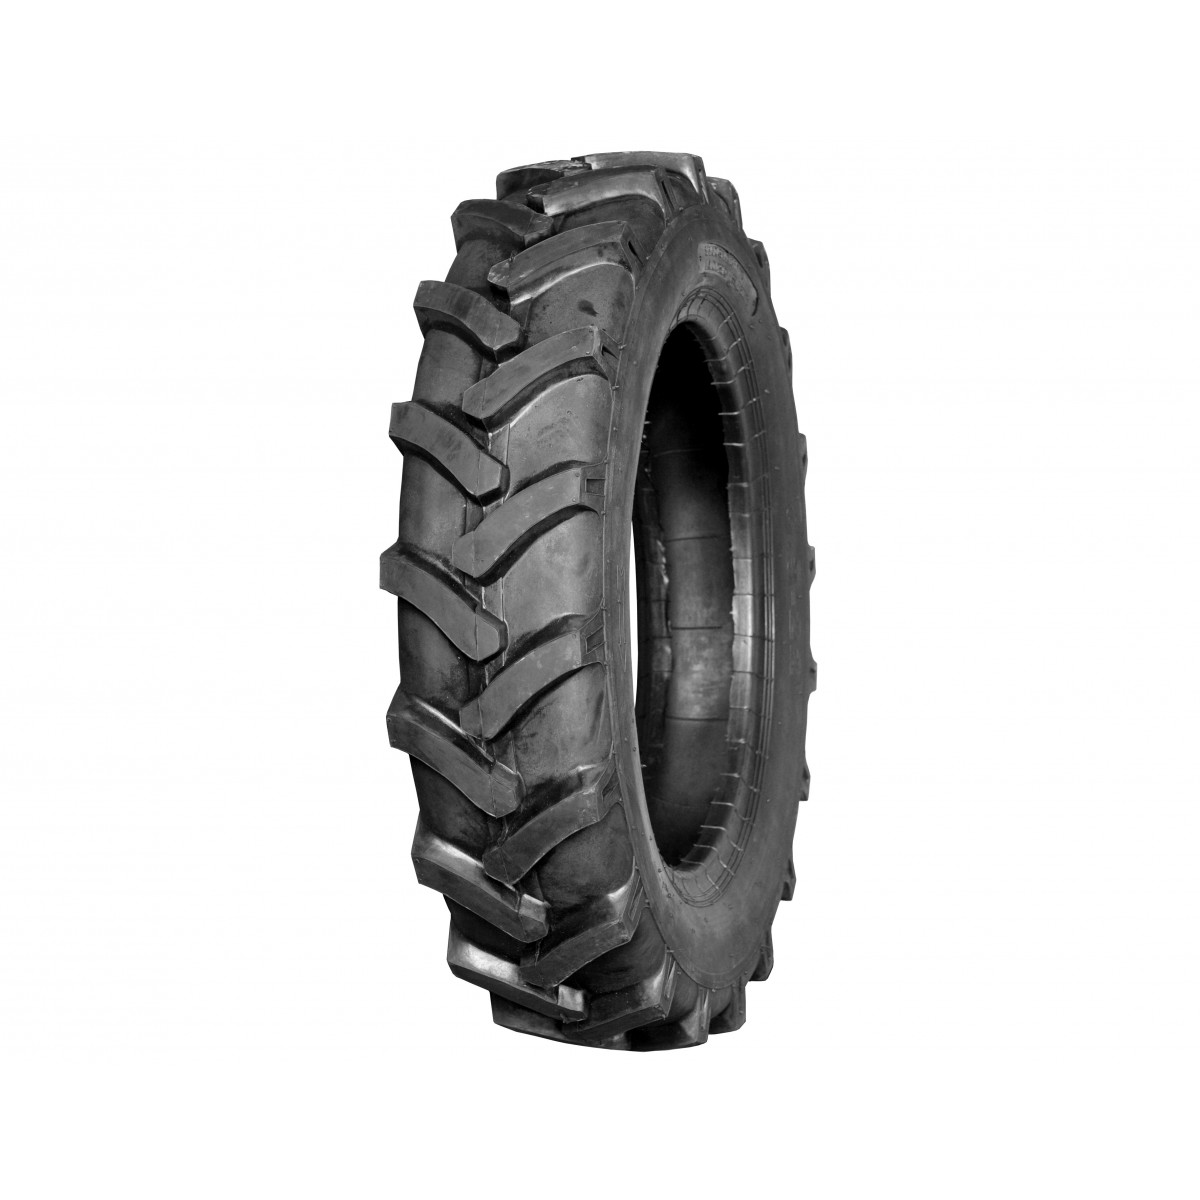 Agricultural tire 8.3-22 8PR 8.3x22 FIR